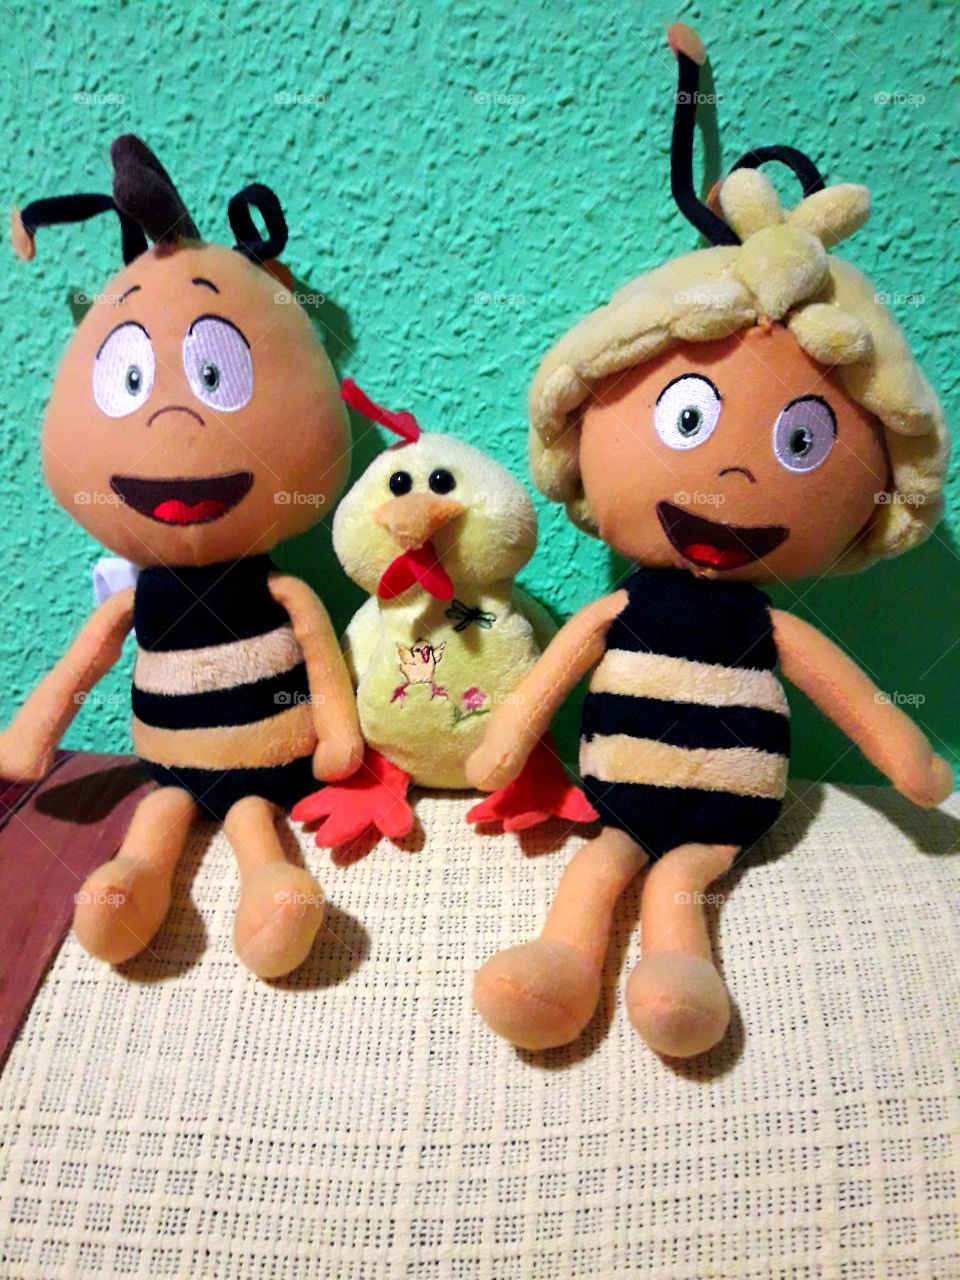 La parejita feliz de Willy y la abeja Maya, acompañados de su amiguito pollito.